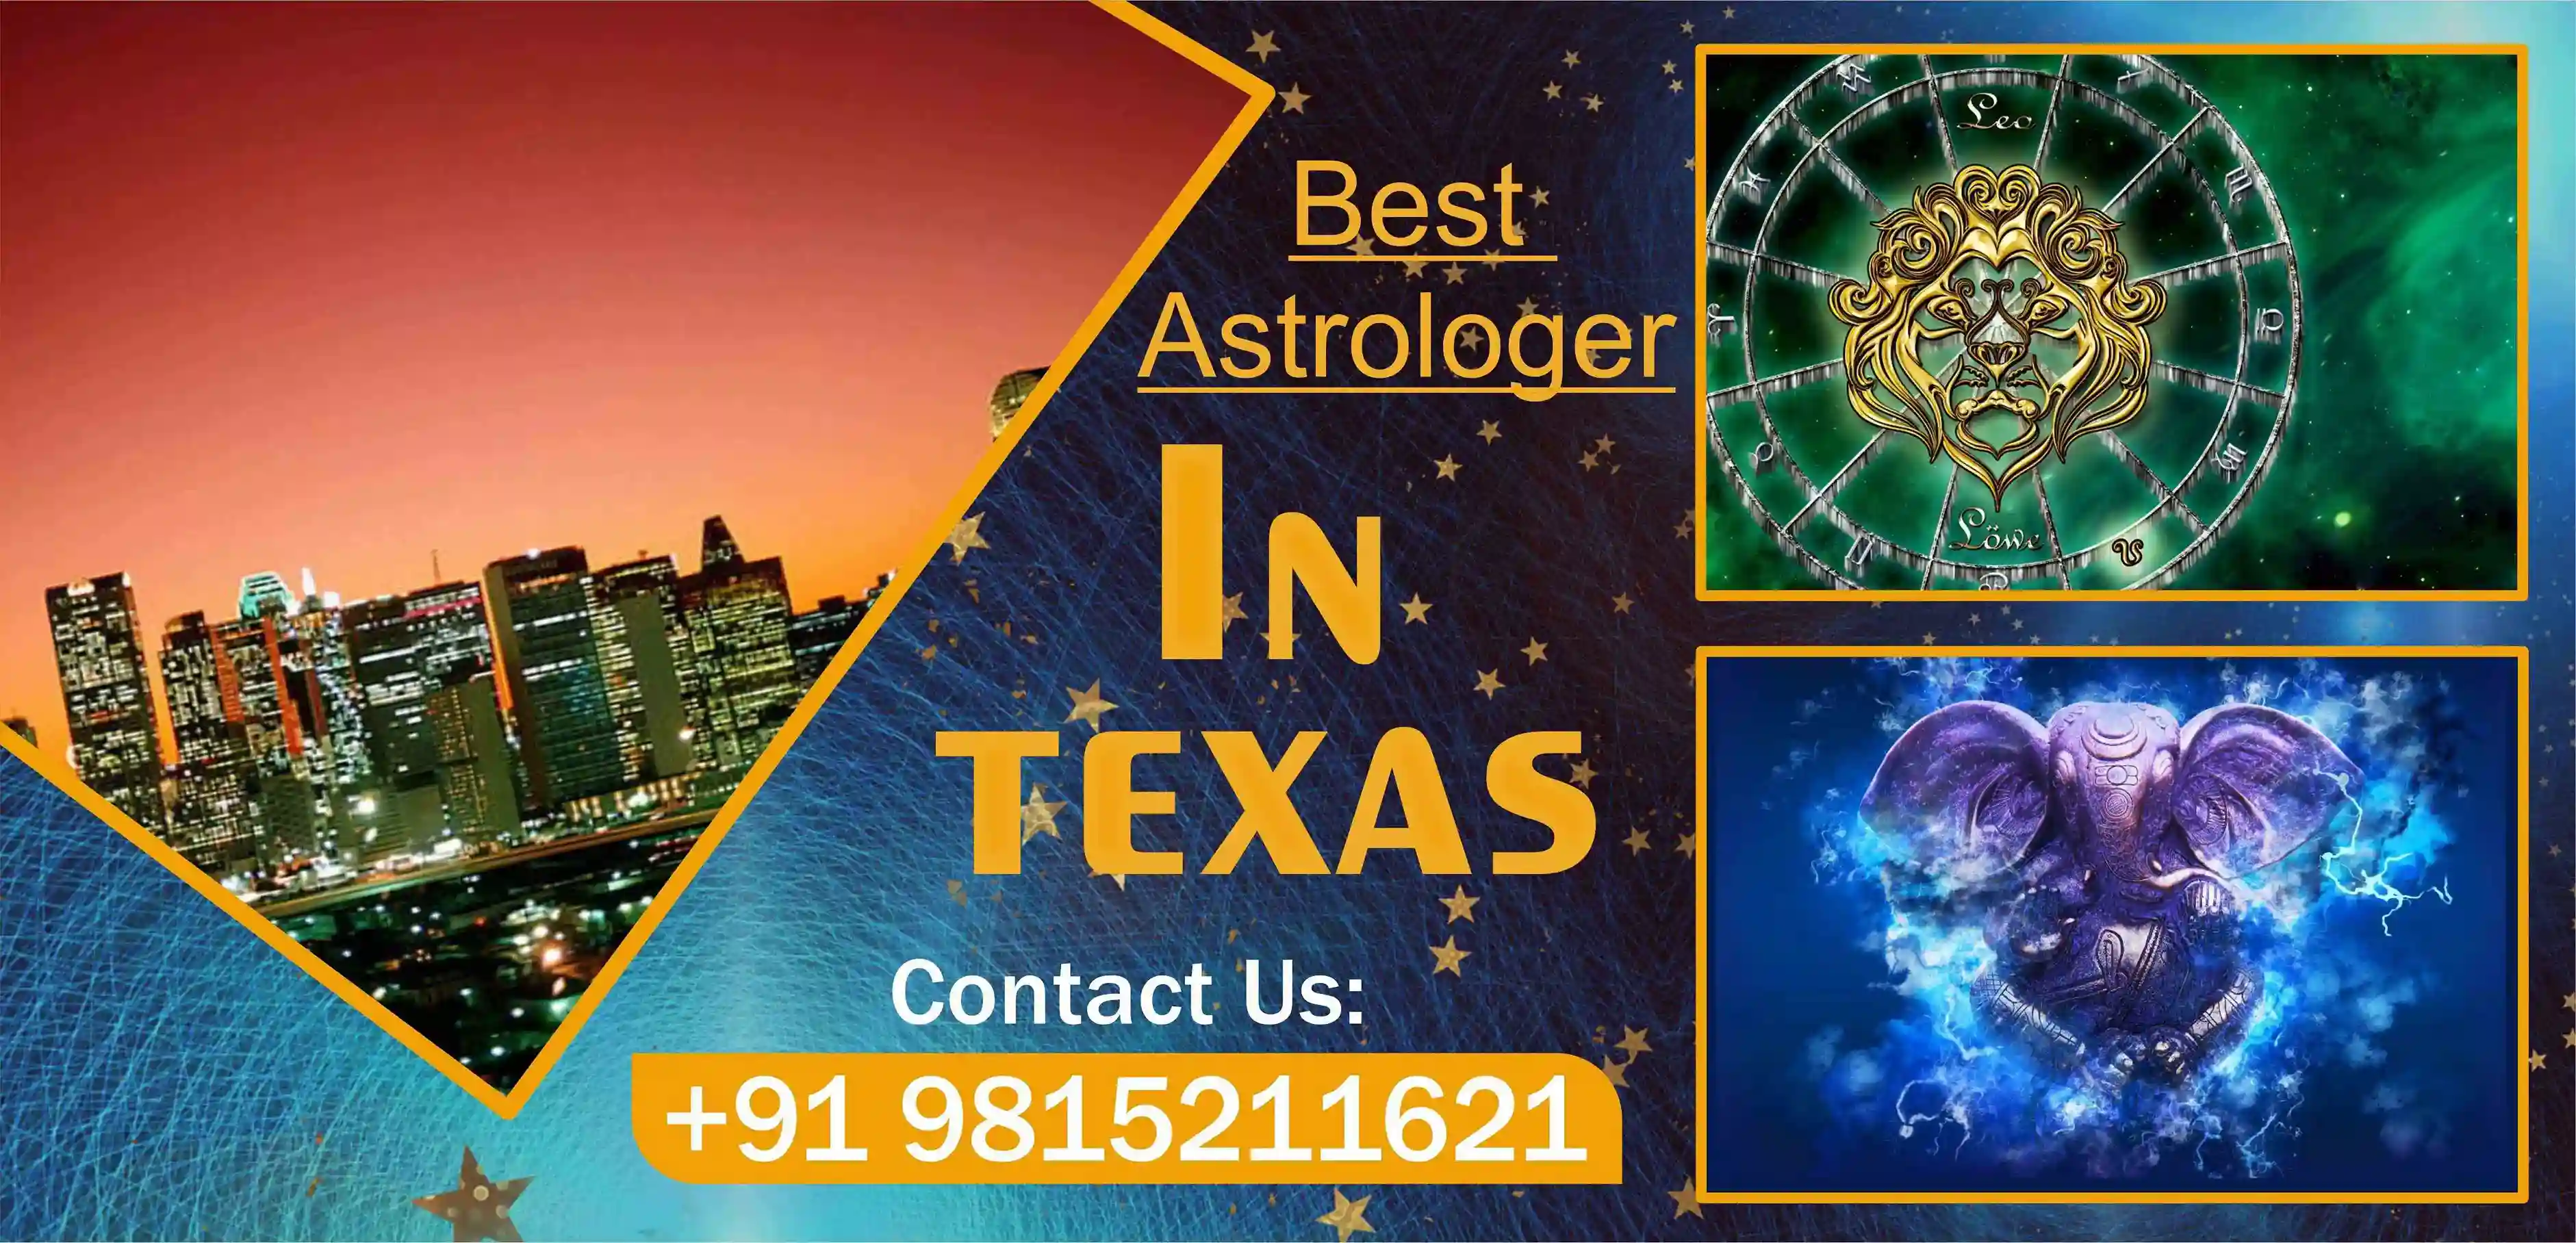 Vashikaran Astrologer